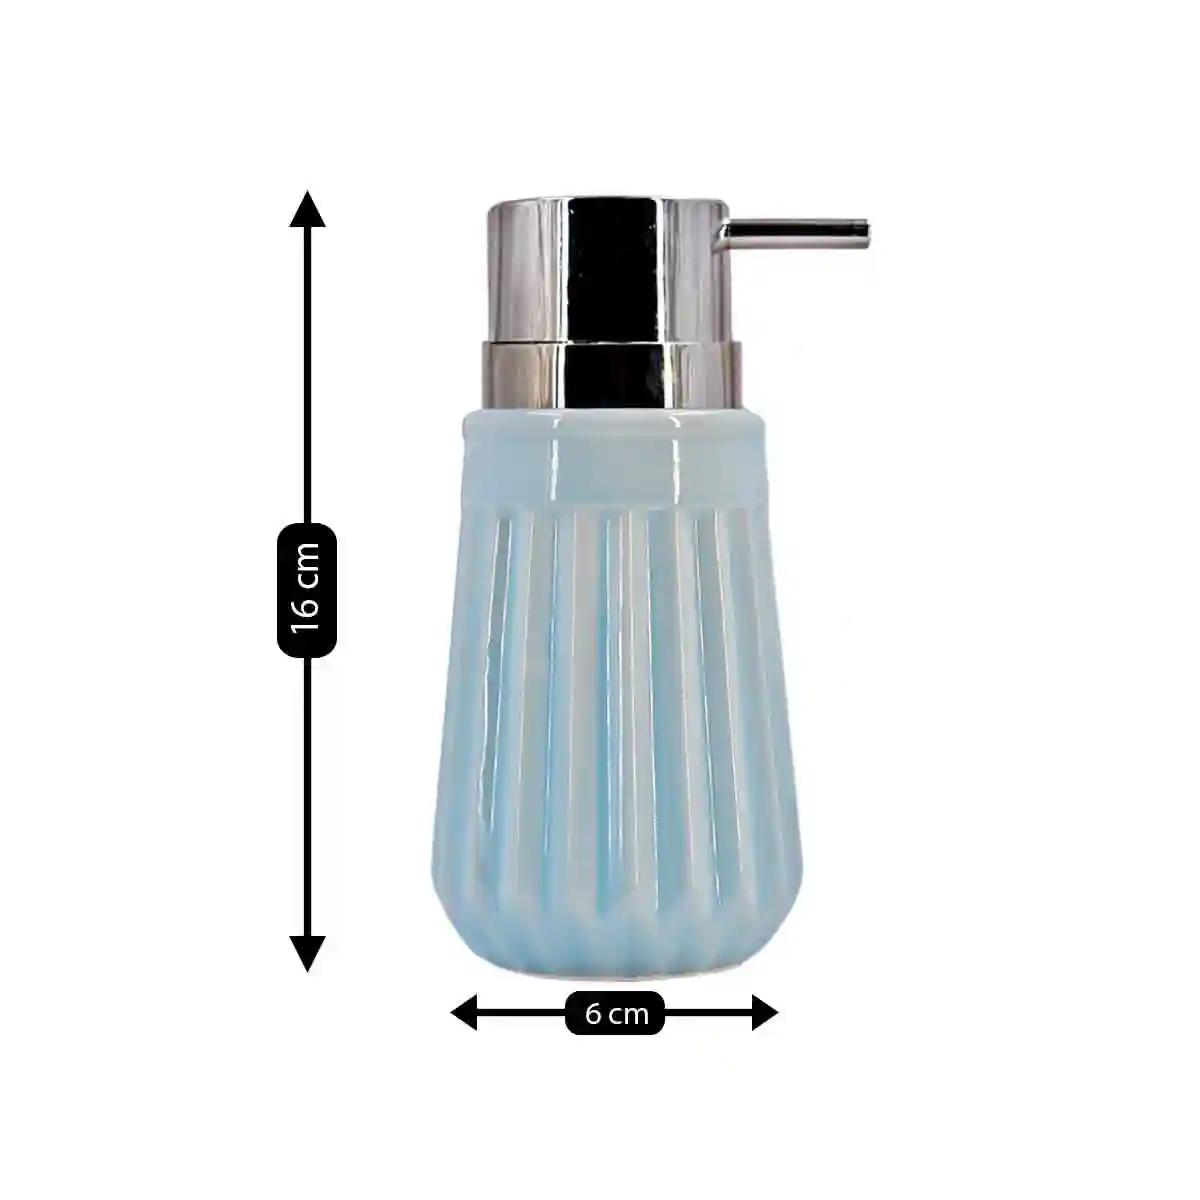 Kookee Ceramic Soap Dispenser for Bathroom handwash, refillable pump bottle for Kitchen hand wash basin, Set of 2 - Blue (7980)